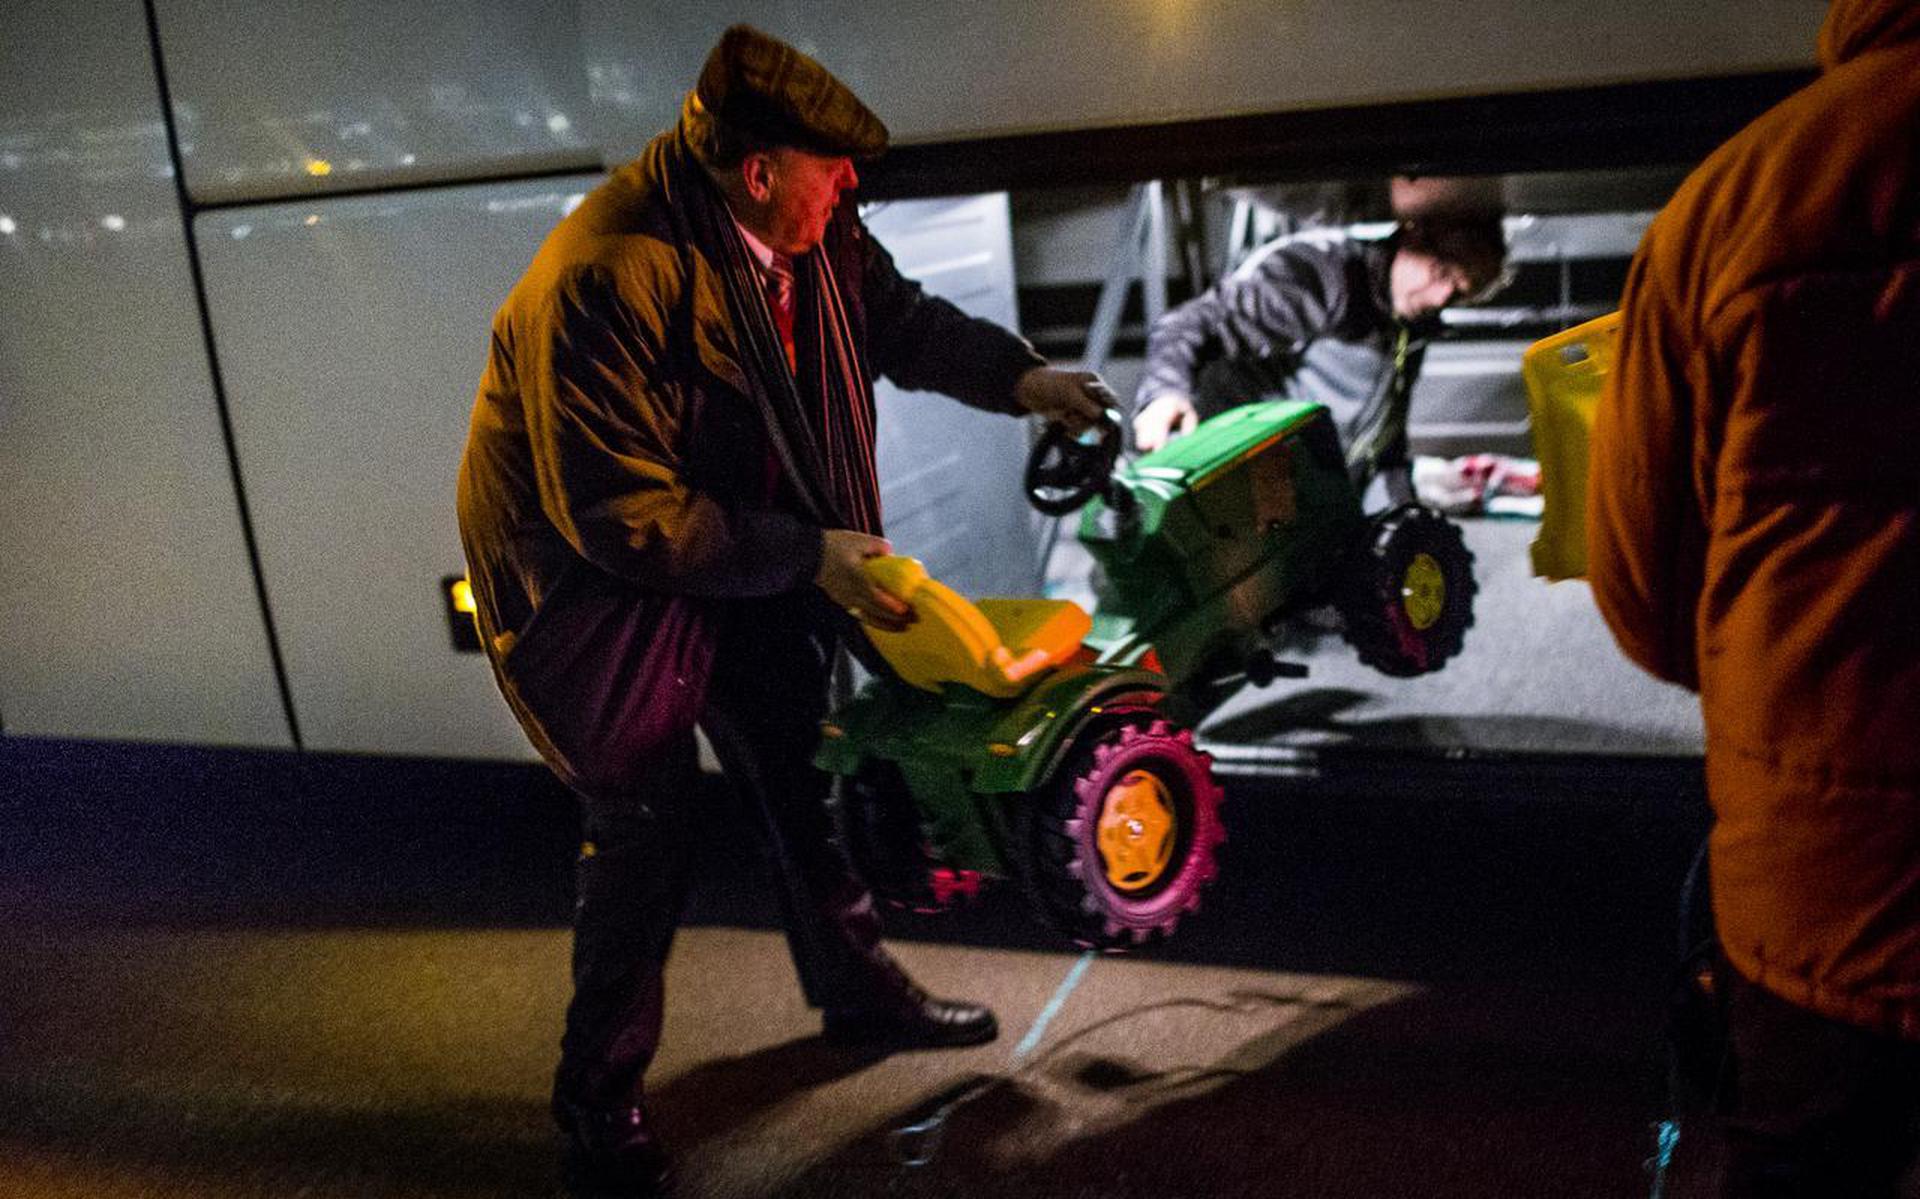 Groningse boeren vertrekken begin 2018 na een dag actievoeren tijdens een hoorzitting in Den Haag weer naar huis. FOTO ANP/SIESE VEENSTRA